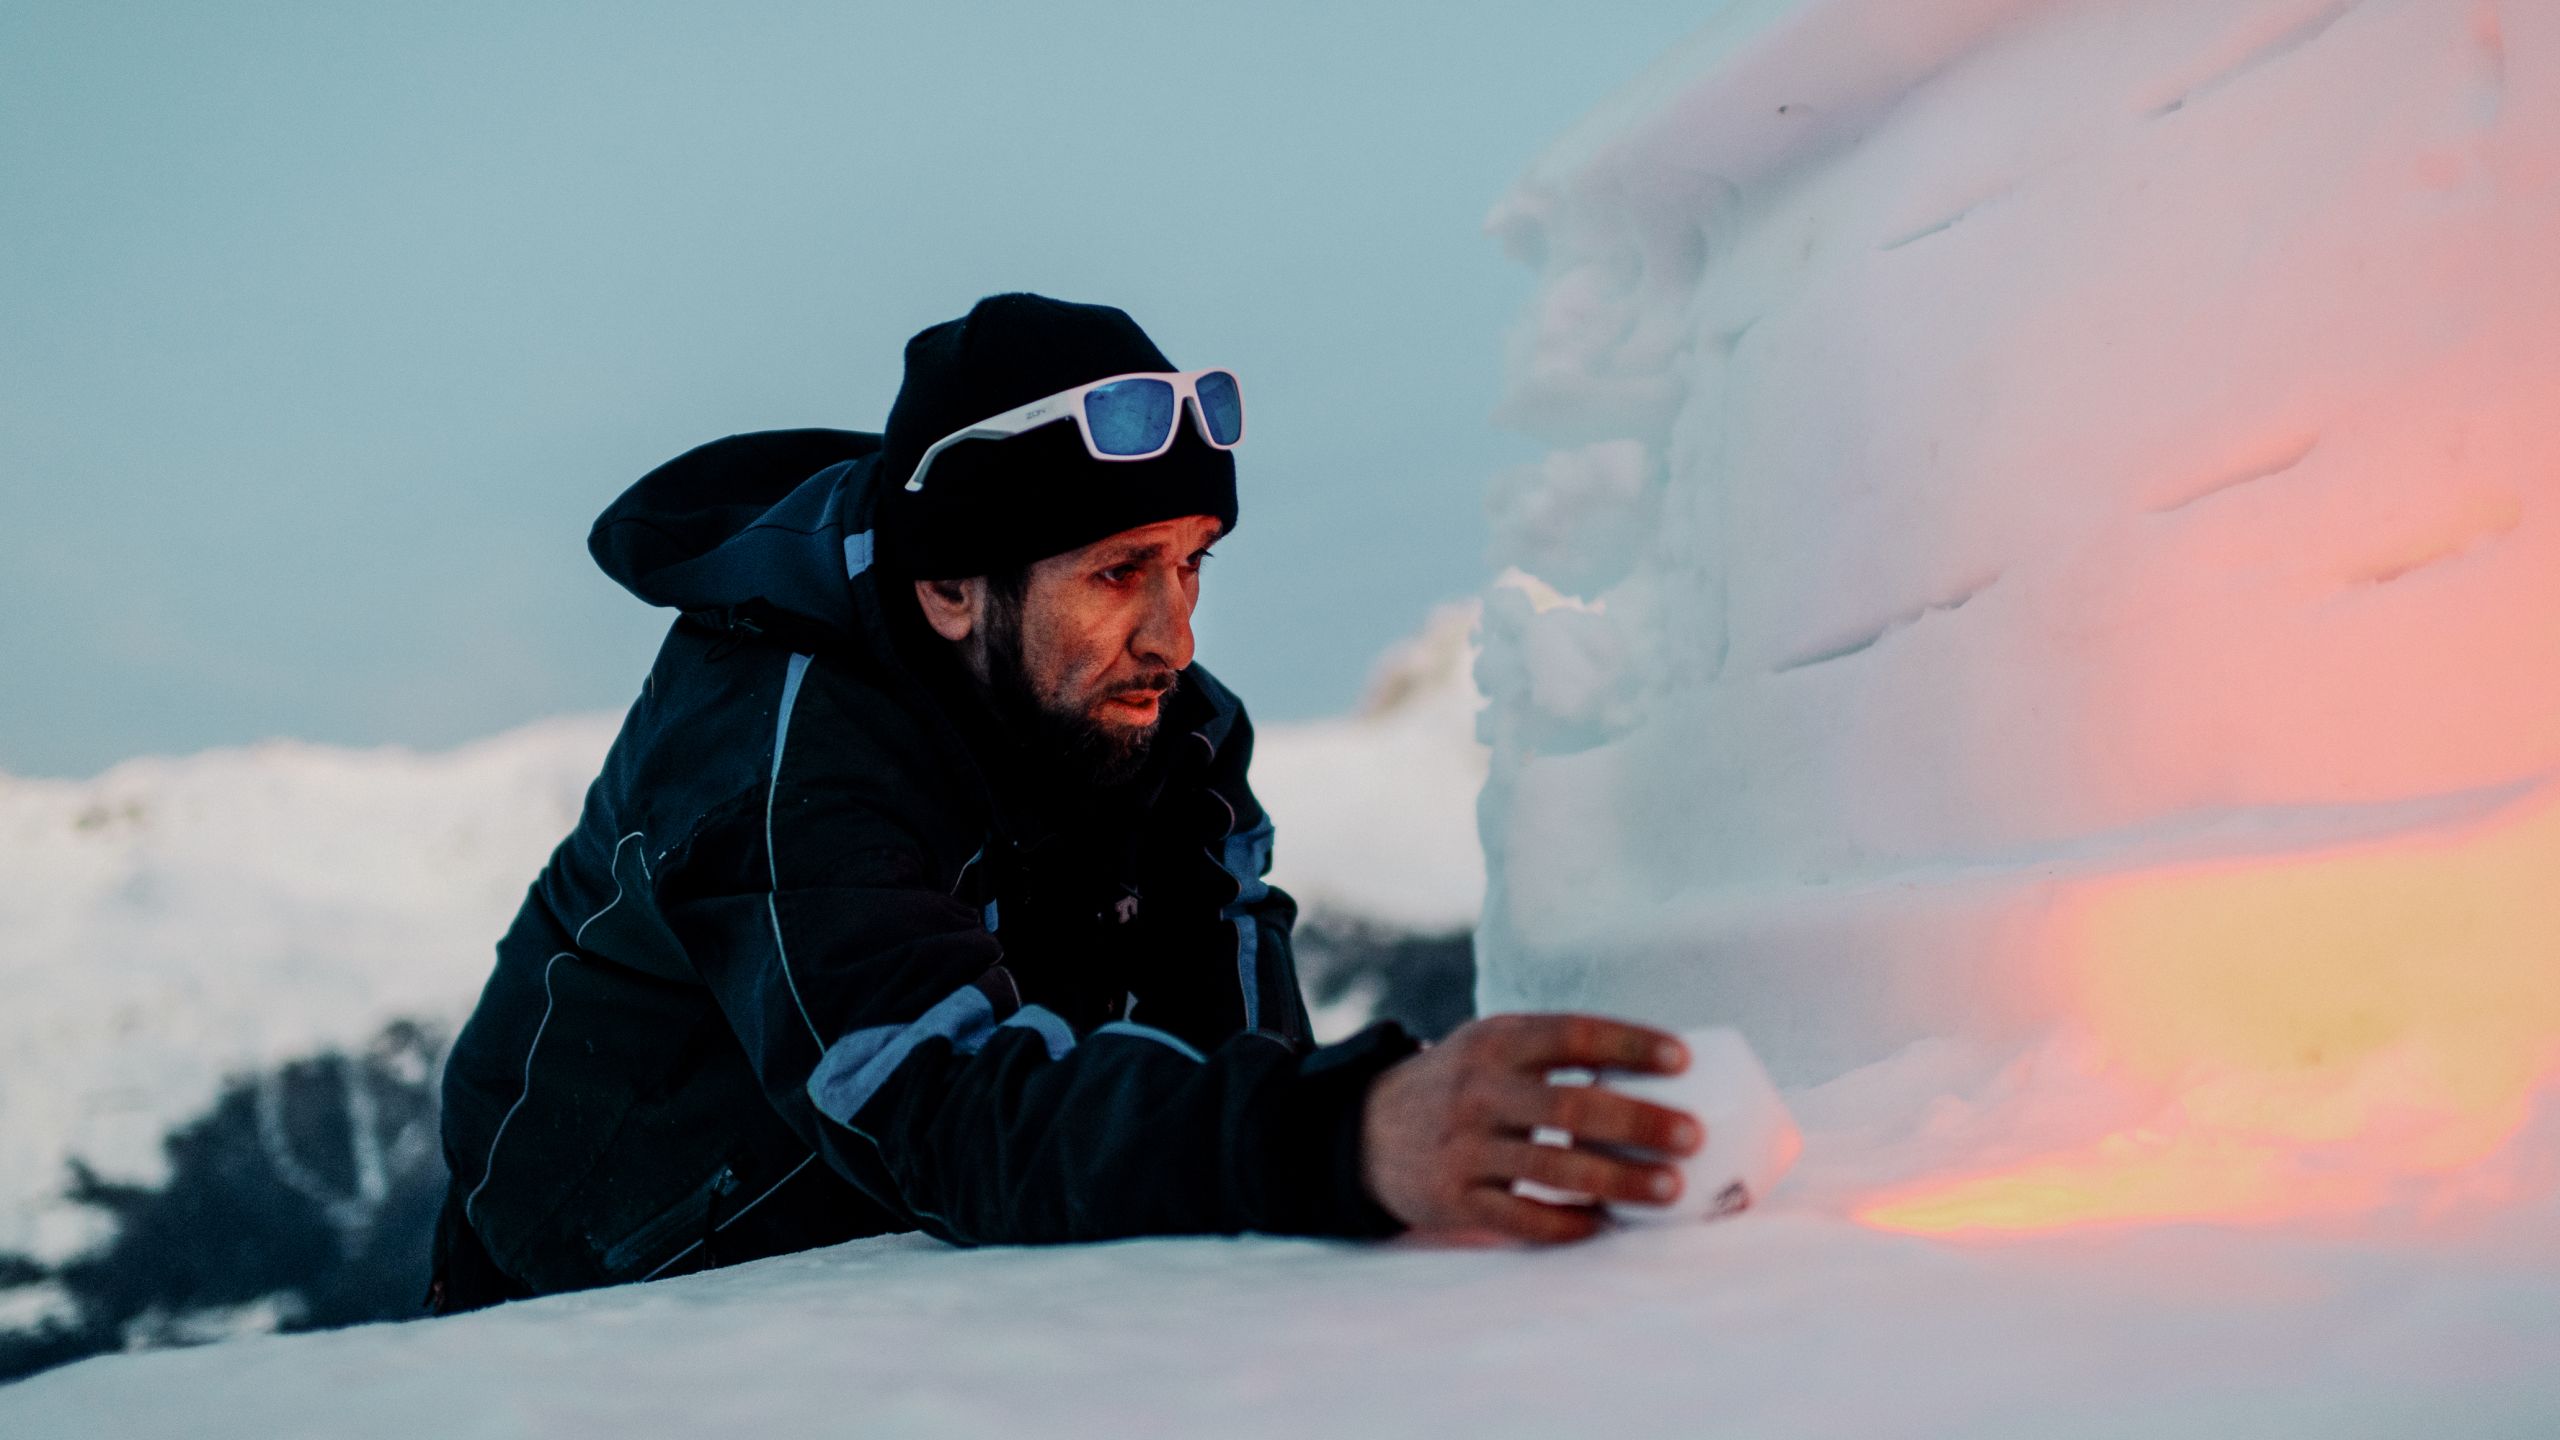 Après son service sur le téléski, Marcio s'attarde souvent un moment près de sa sculpture sur neige, Valais, Suisse